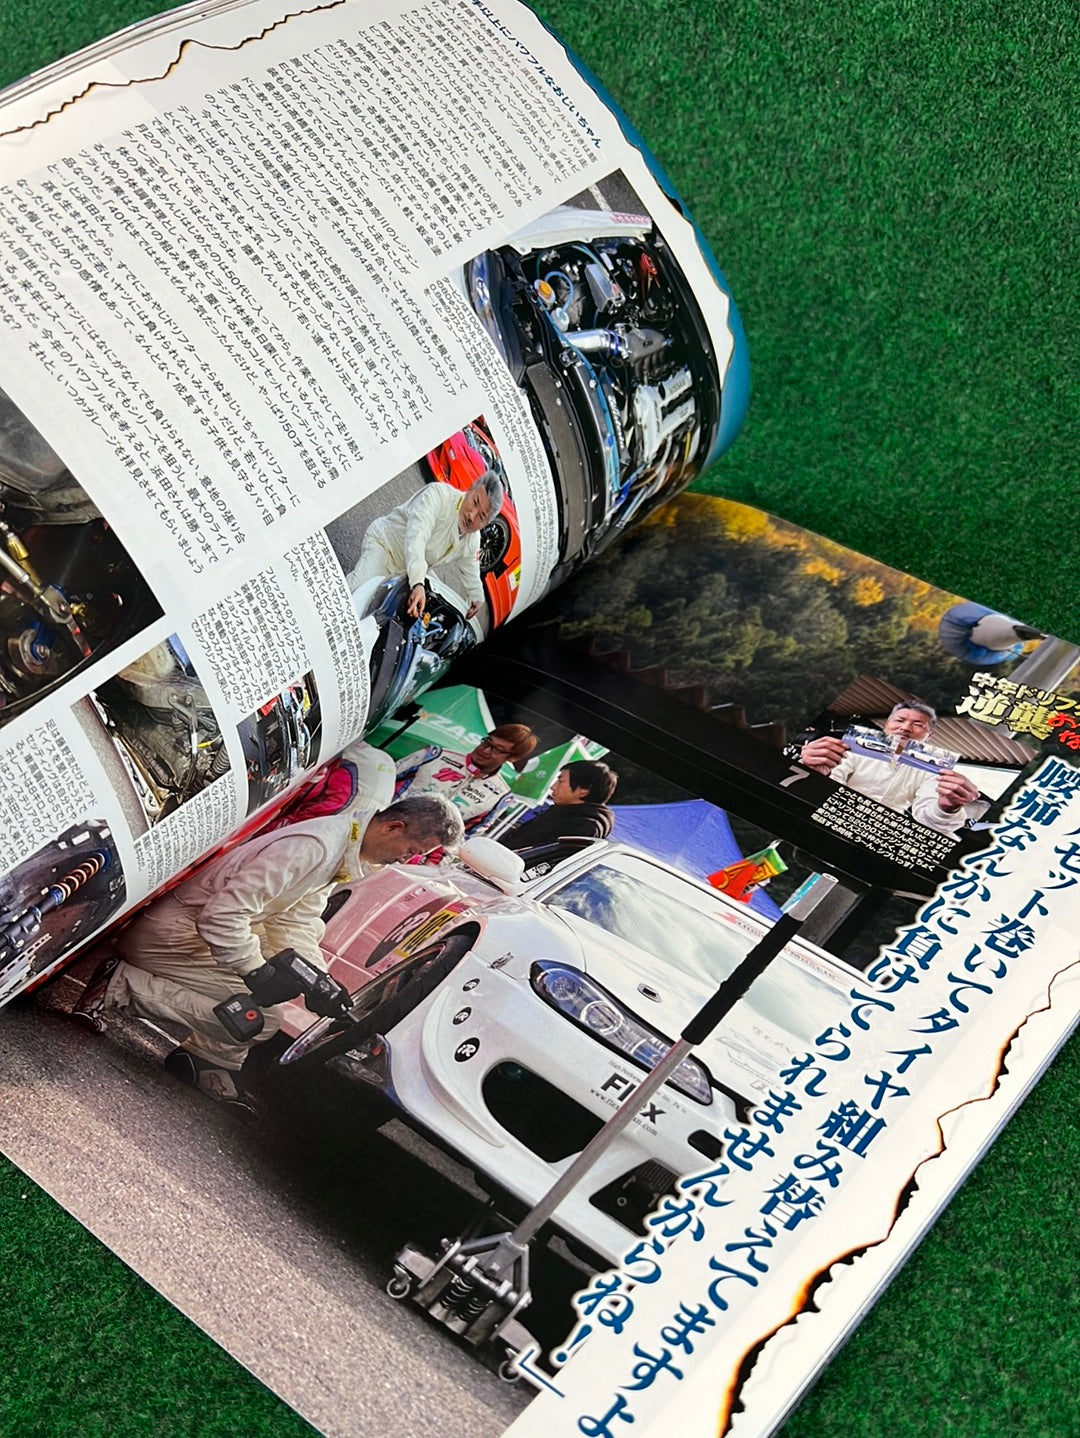 Drift Tengoku Magazine - January 2016